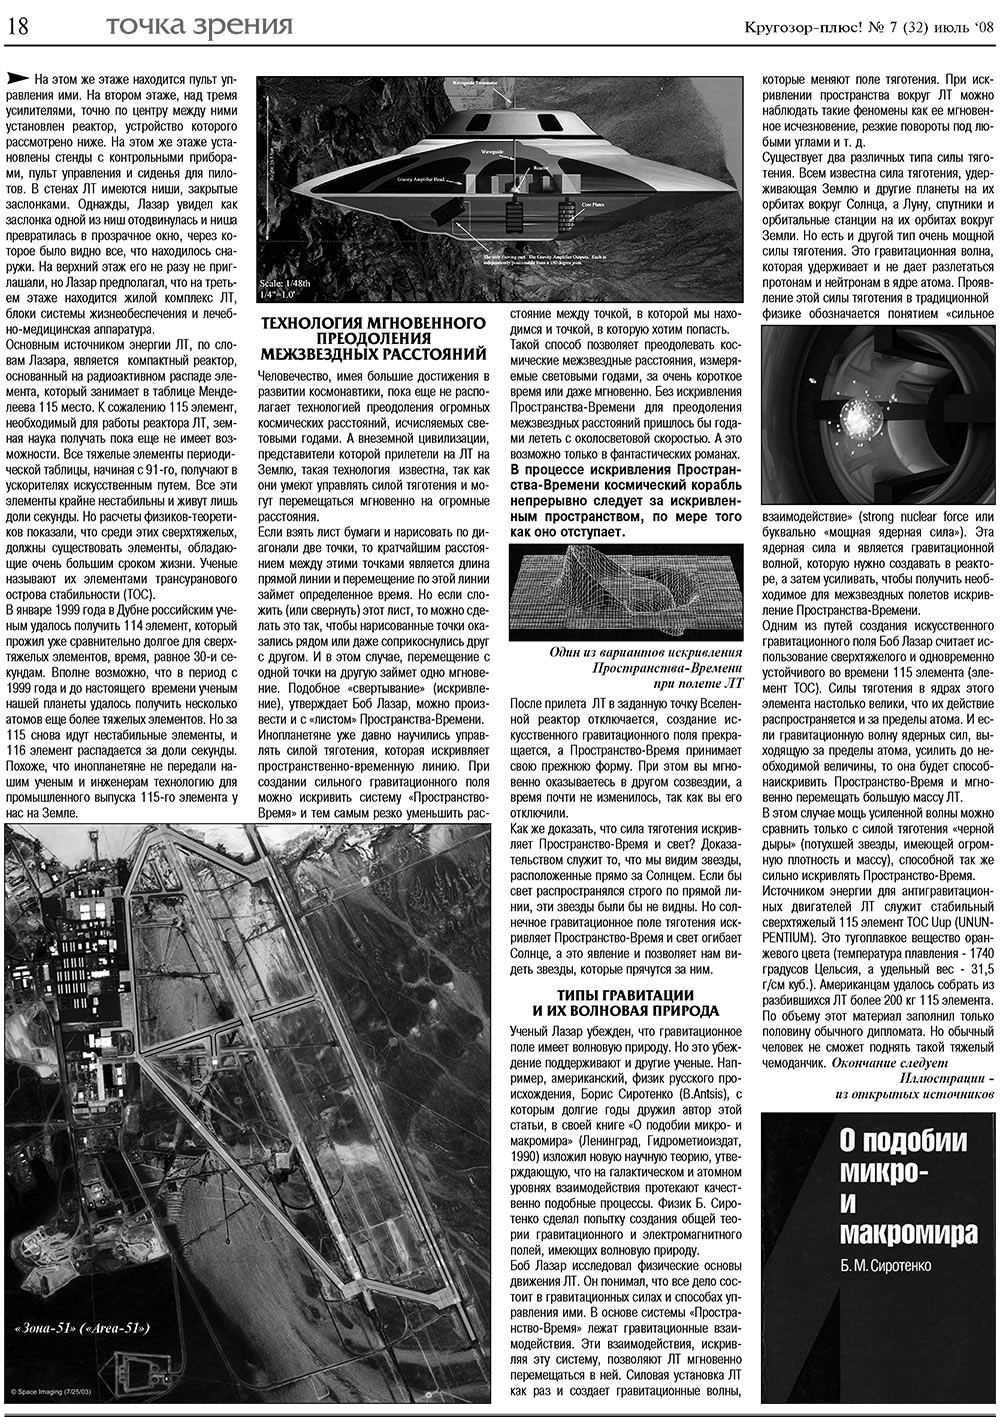 Кругозор плюс!, газета. 2008 №7 стр.18